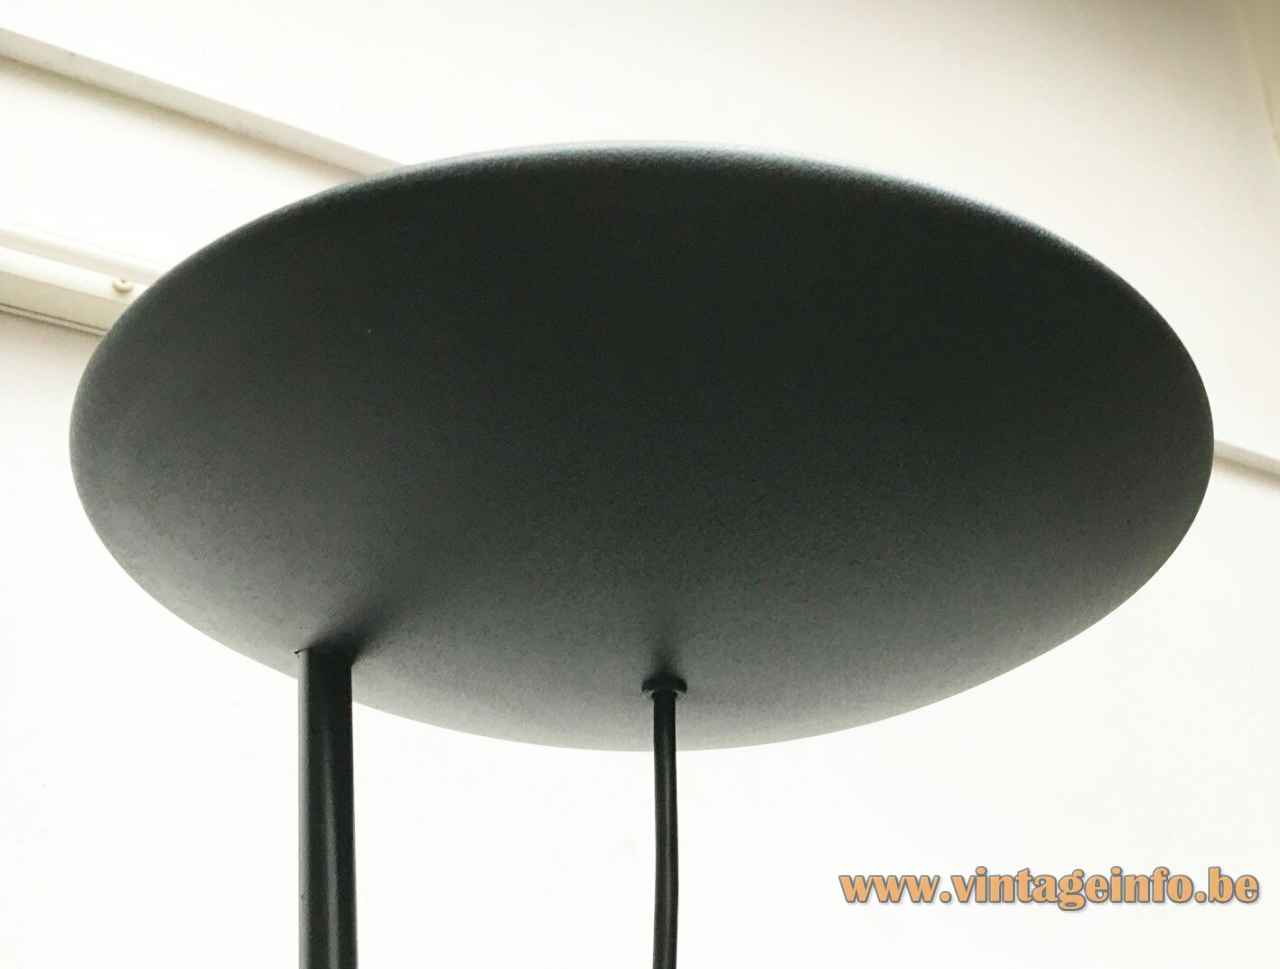 PAF Tao floor lamp long black rod & aluminium disc lampshade halogen R7 bulb 1980s Italy